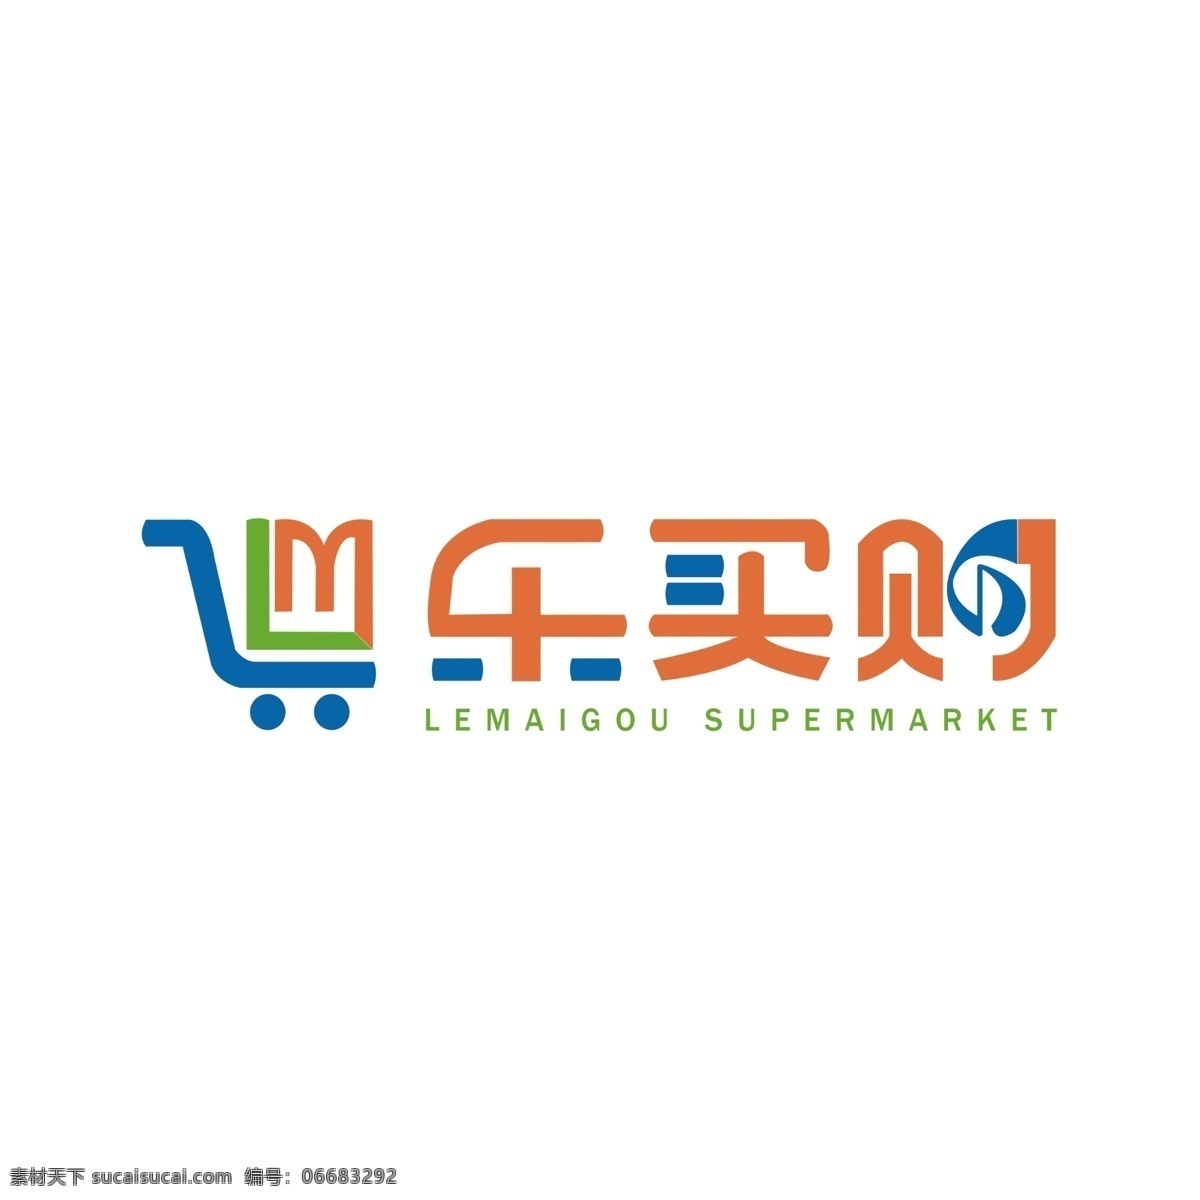 乐 买 购 超市 logo 适量logo 超市logo 乐买购 分层 乐买购超市 logo设计